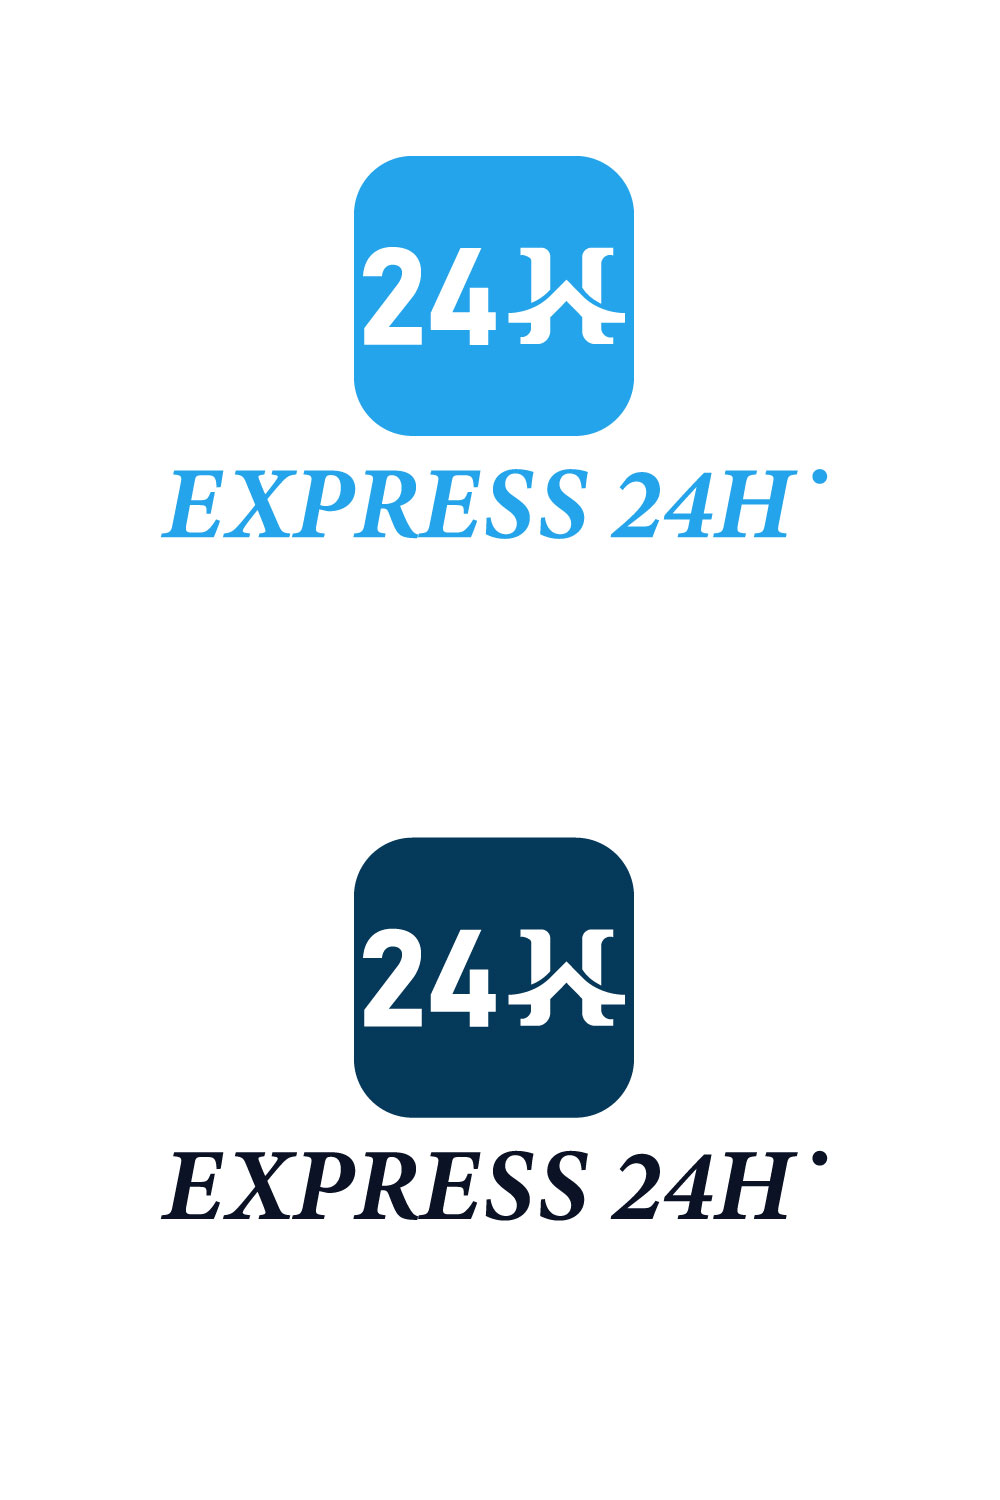 express 24h logo pinterest image 571